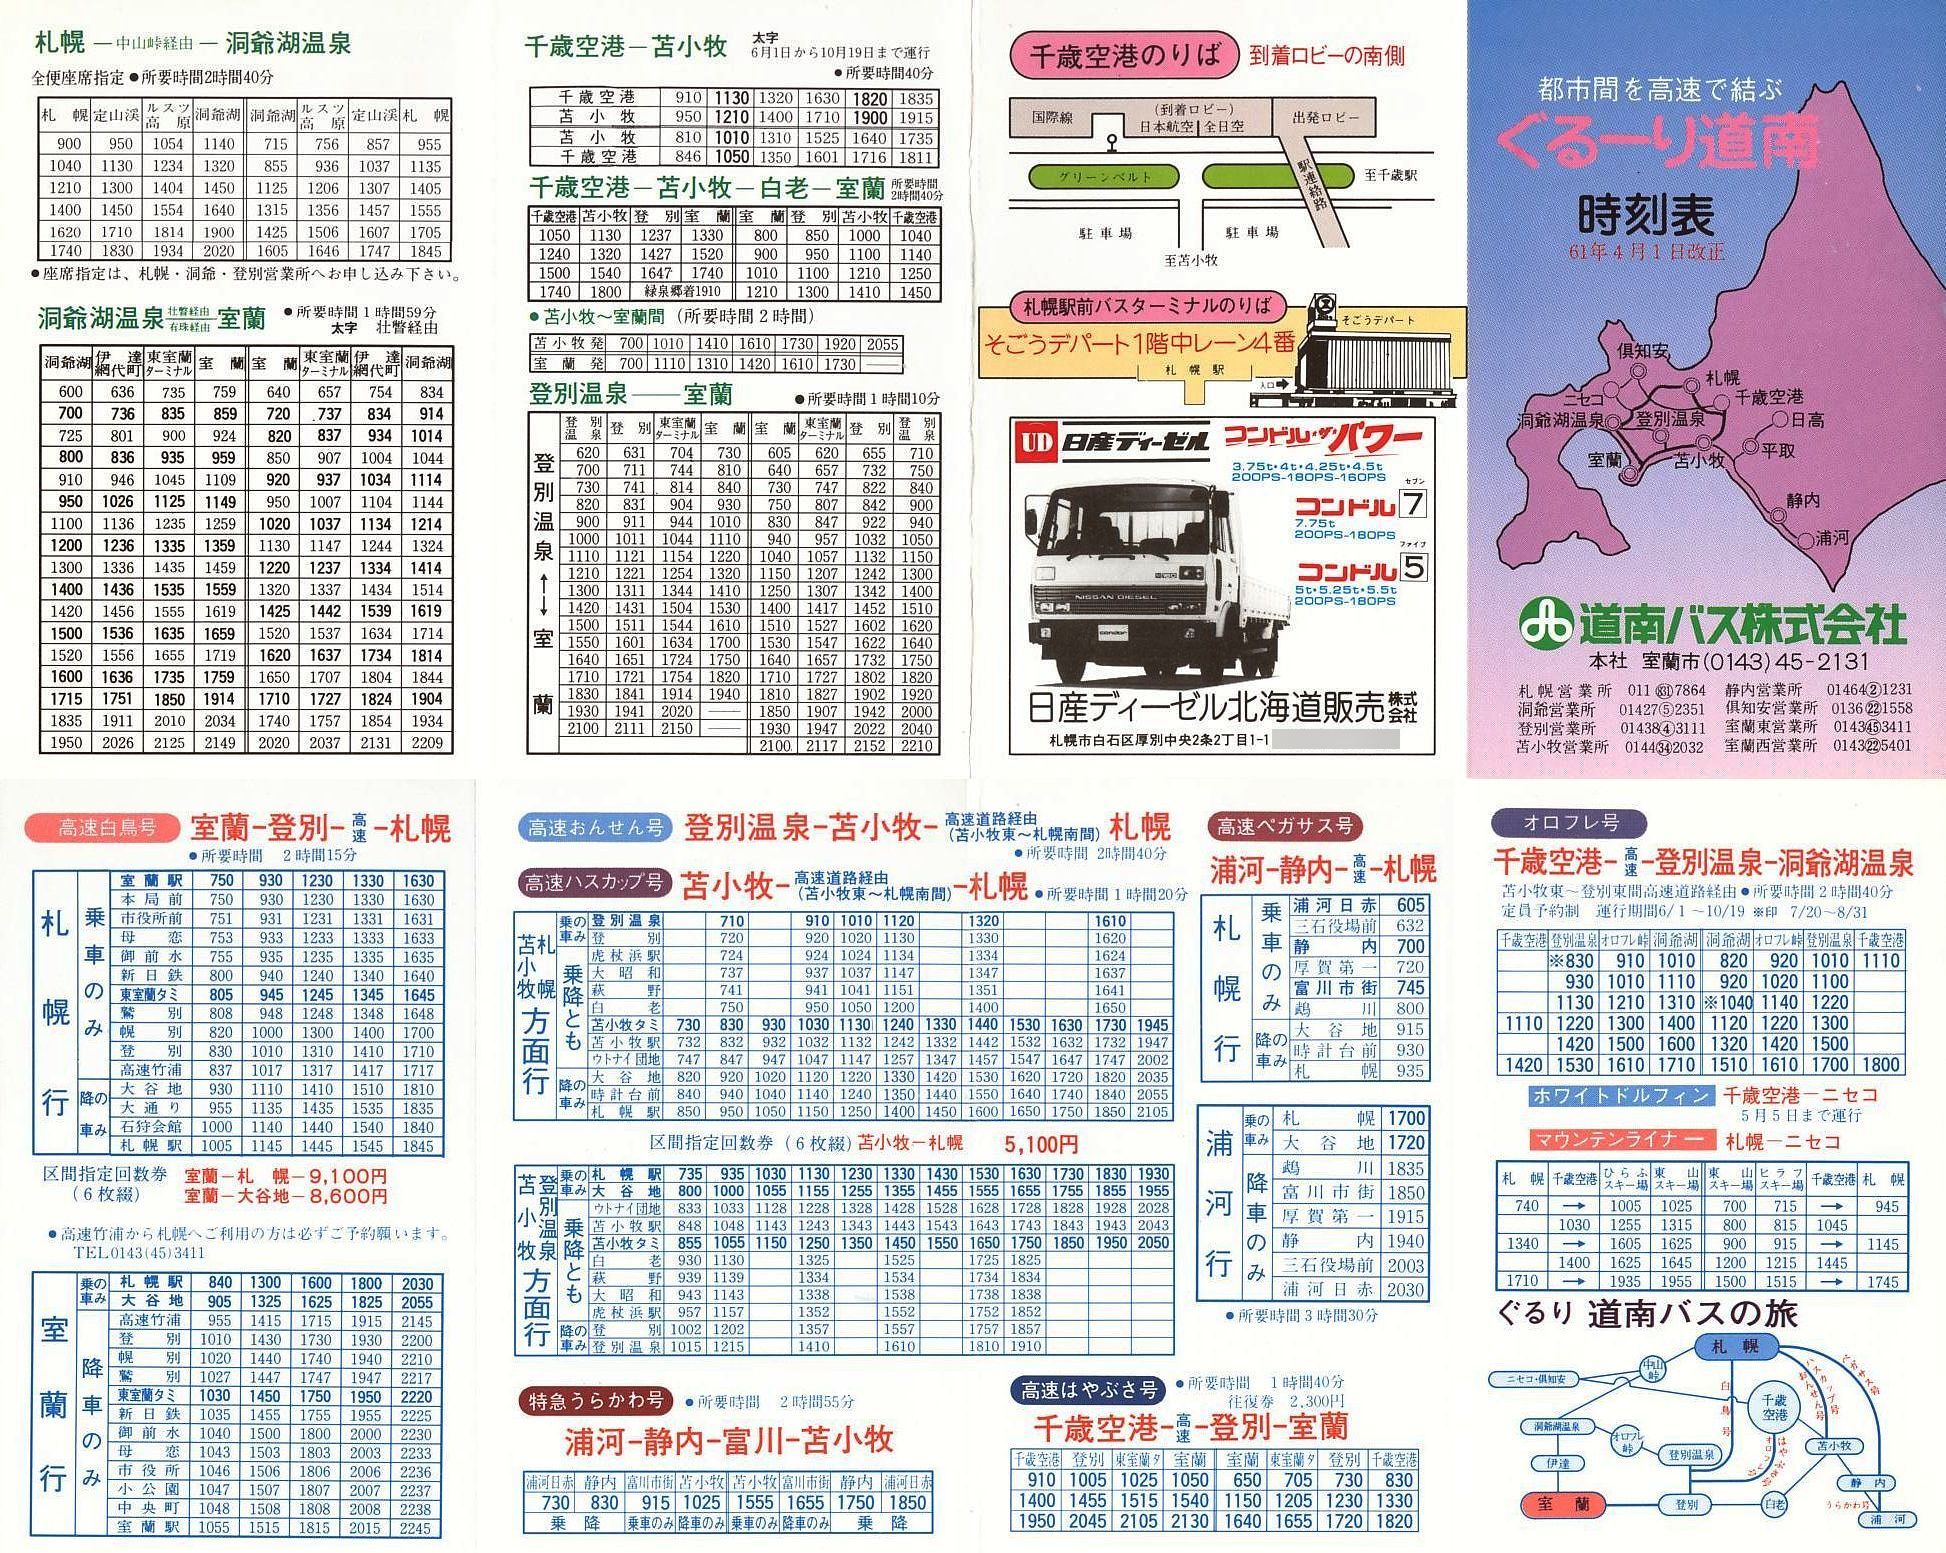 1986 04 01改正 道南バス ぐるーり道南時刻表